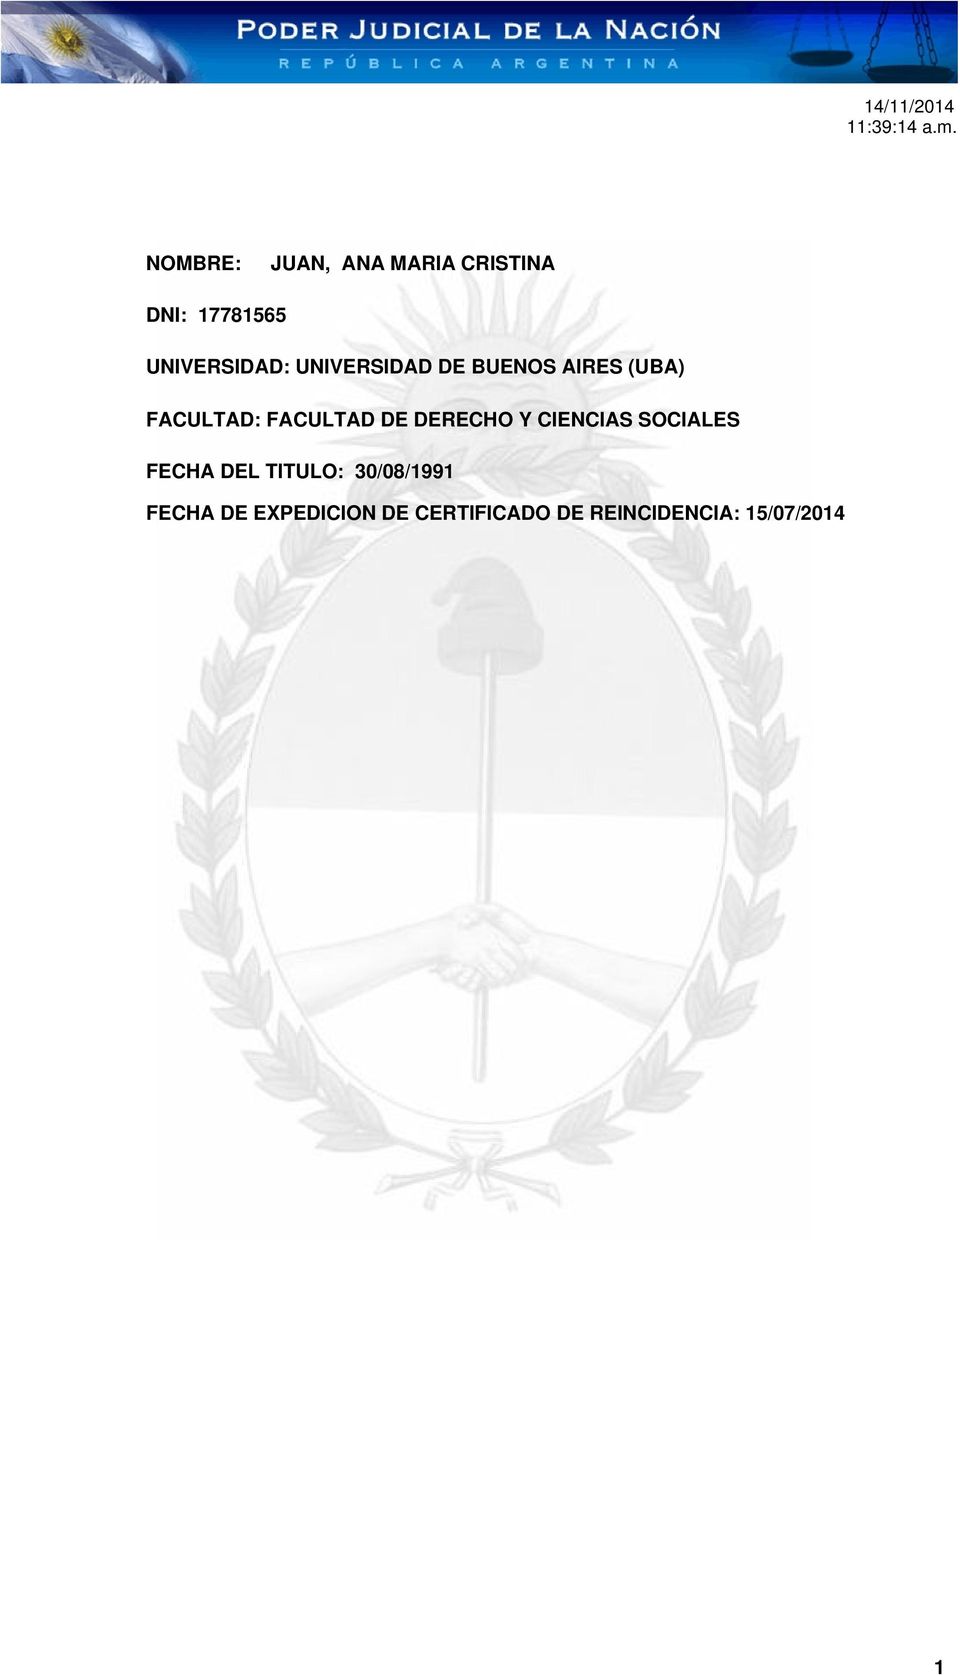 DERECHO Y CIENCIAS SOCIALES FECHA DEL TITULO: 30/08/1991